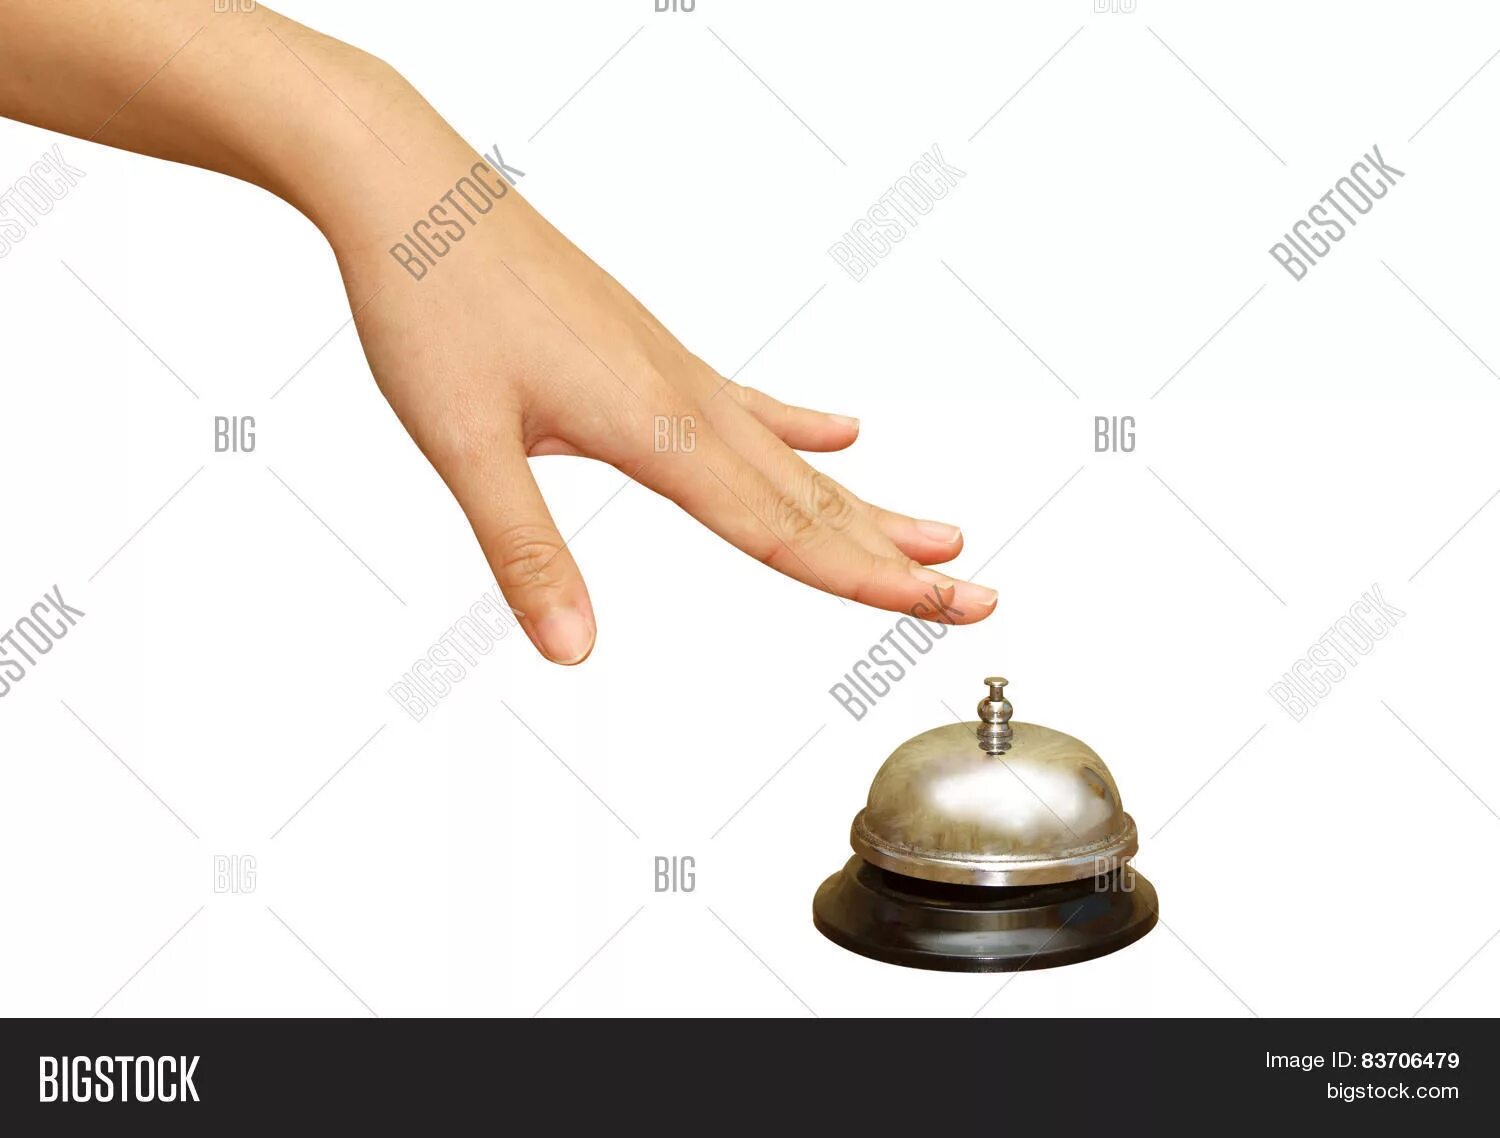 Звон в руках. Колокольчик в руке картинки. Рука держит клош. Рука нажимает на звонок. Женская рука с шариком.